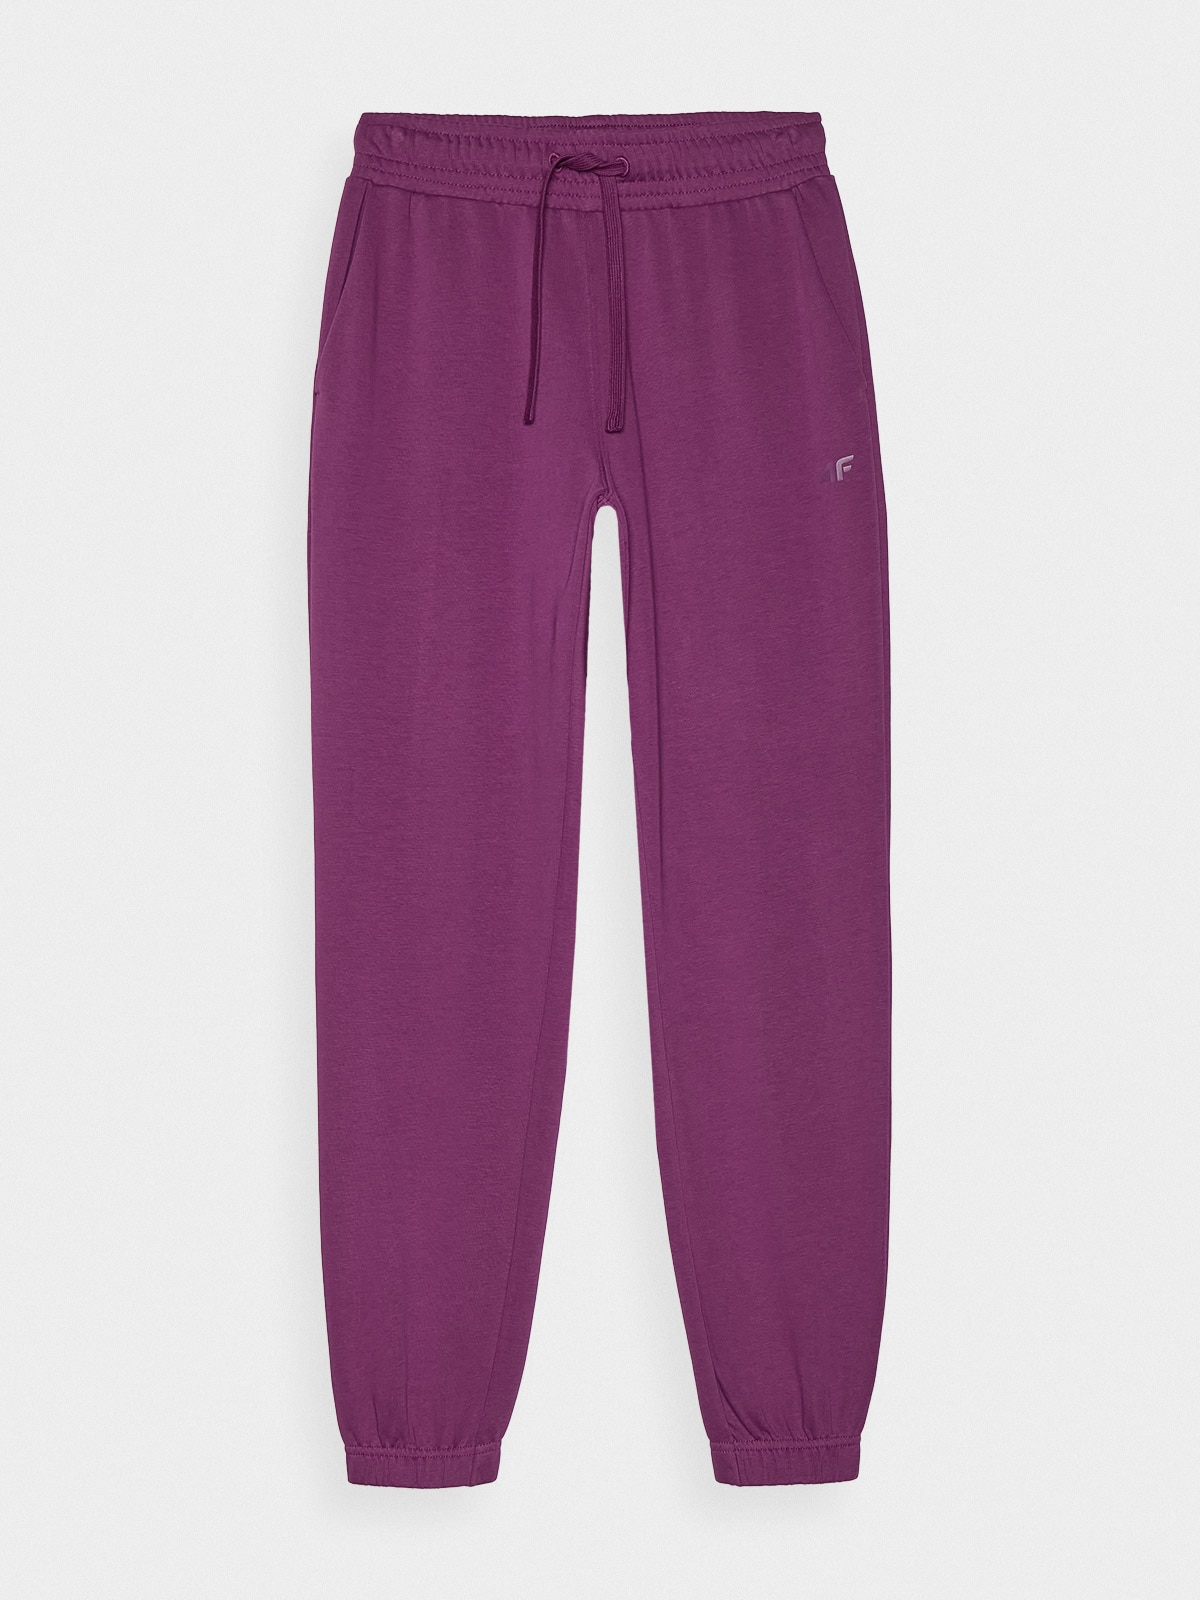 Dámske teplákové nohavice typu jogger - fialové